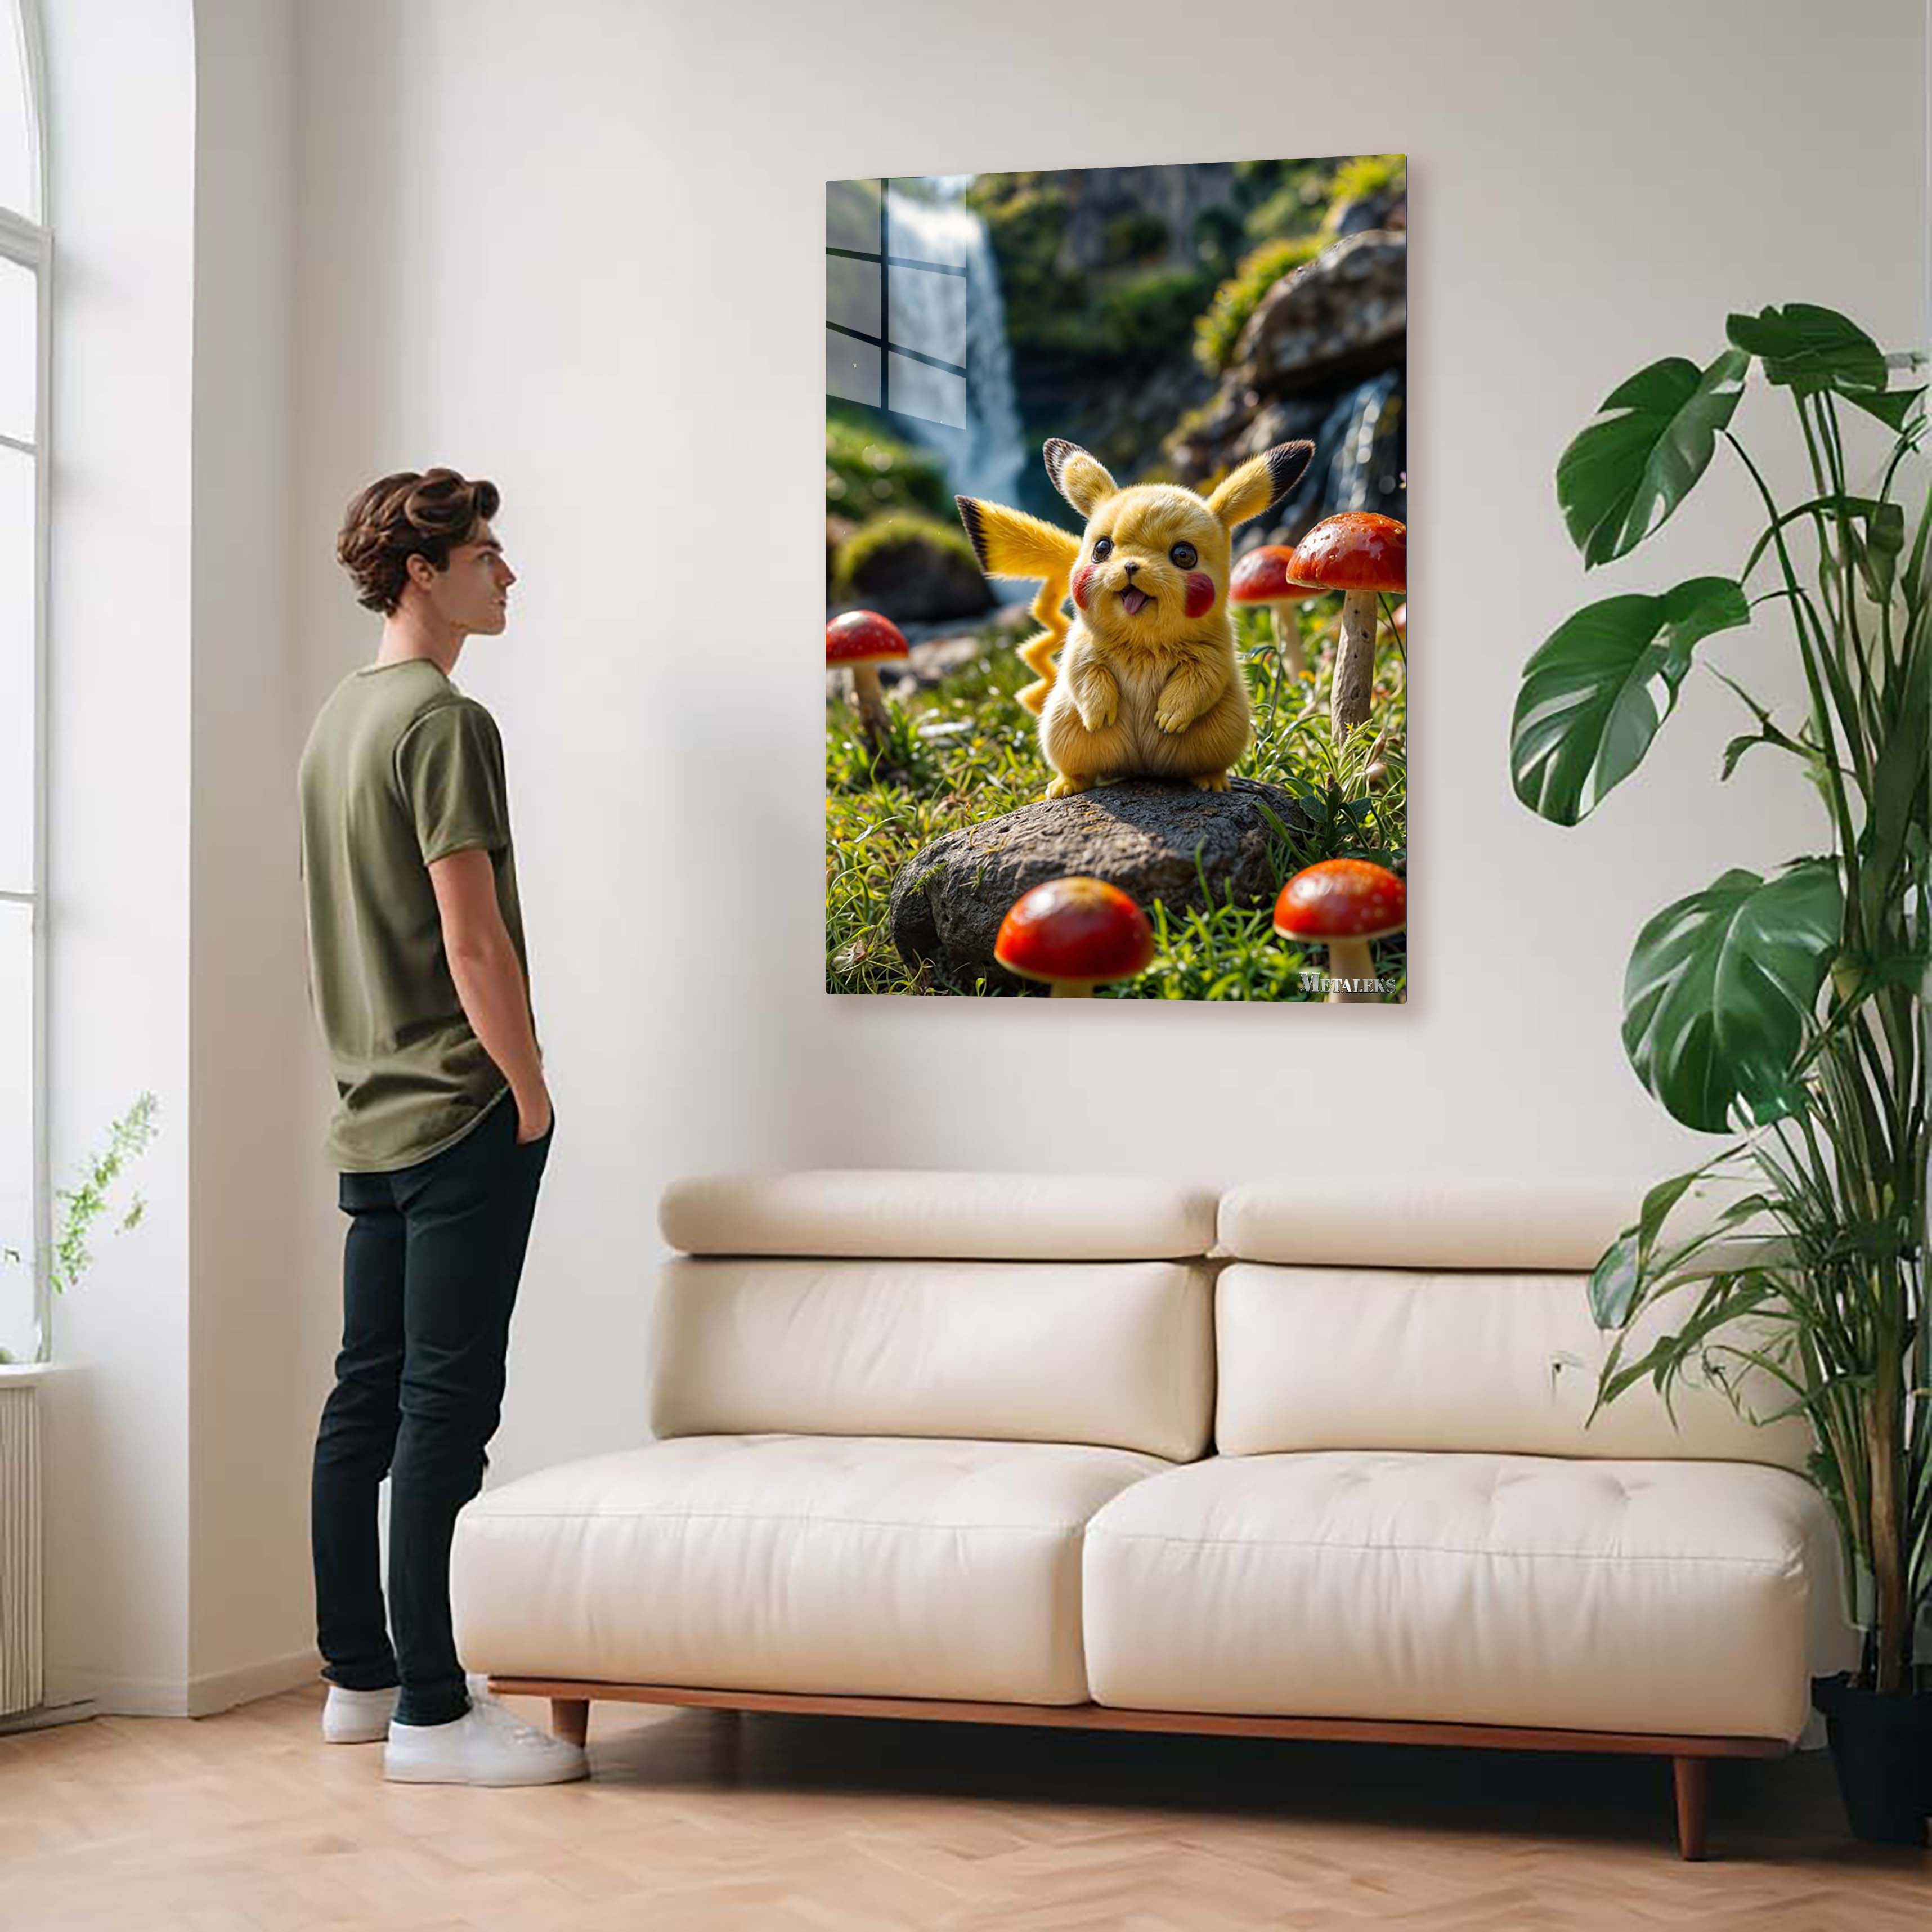 Pikachu's Adventures